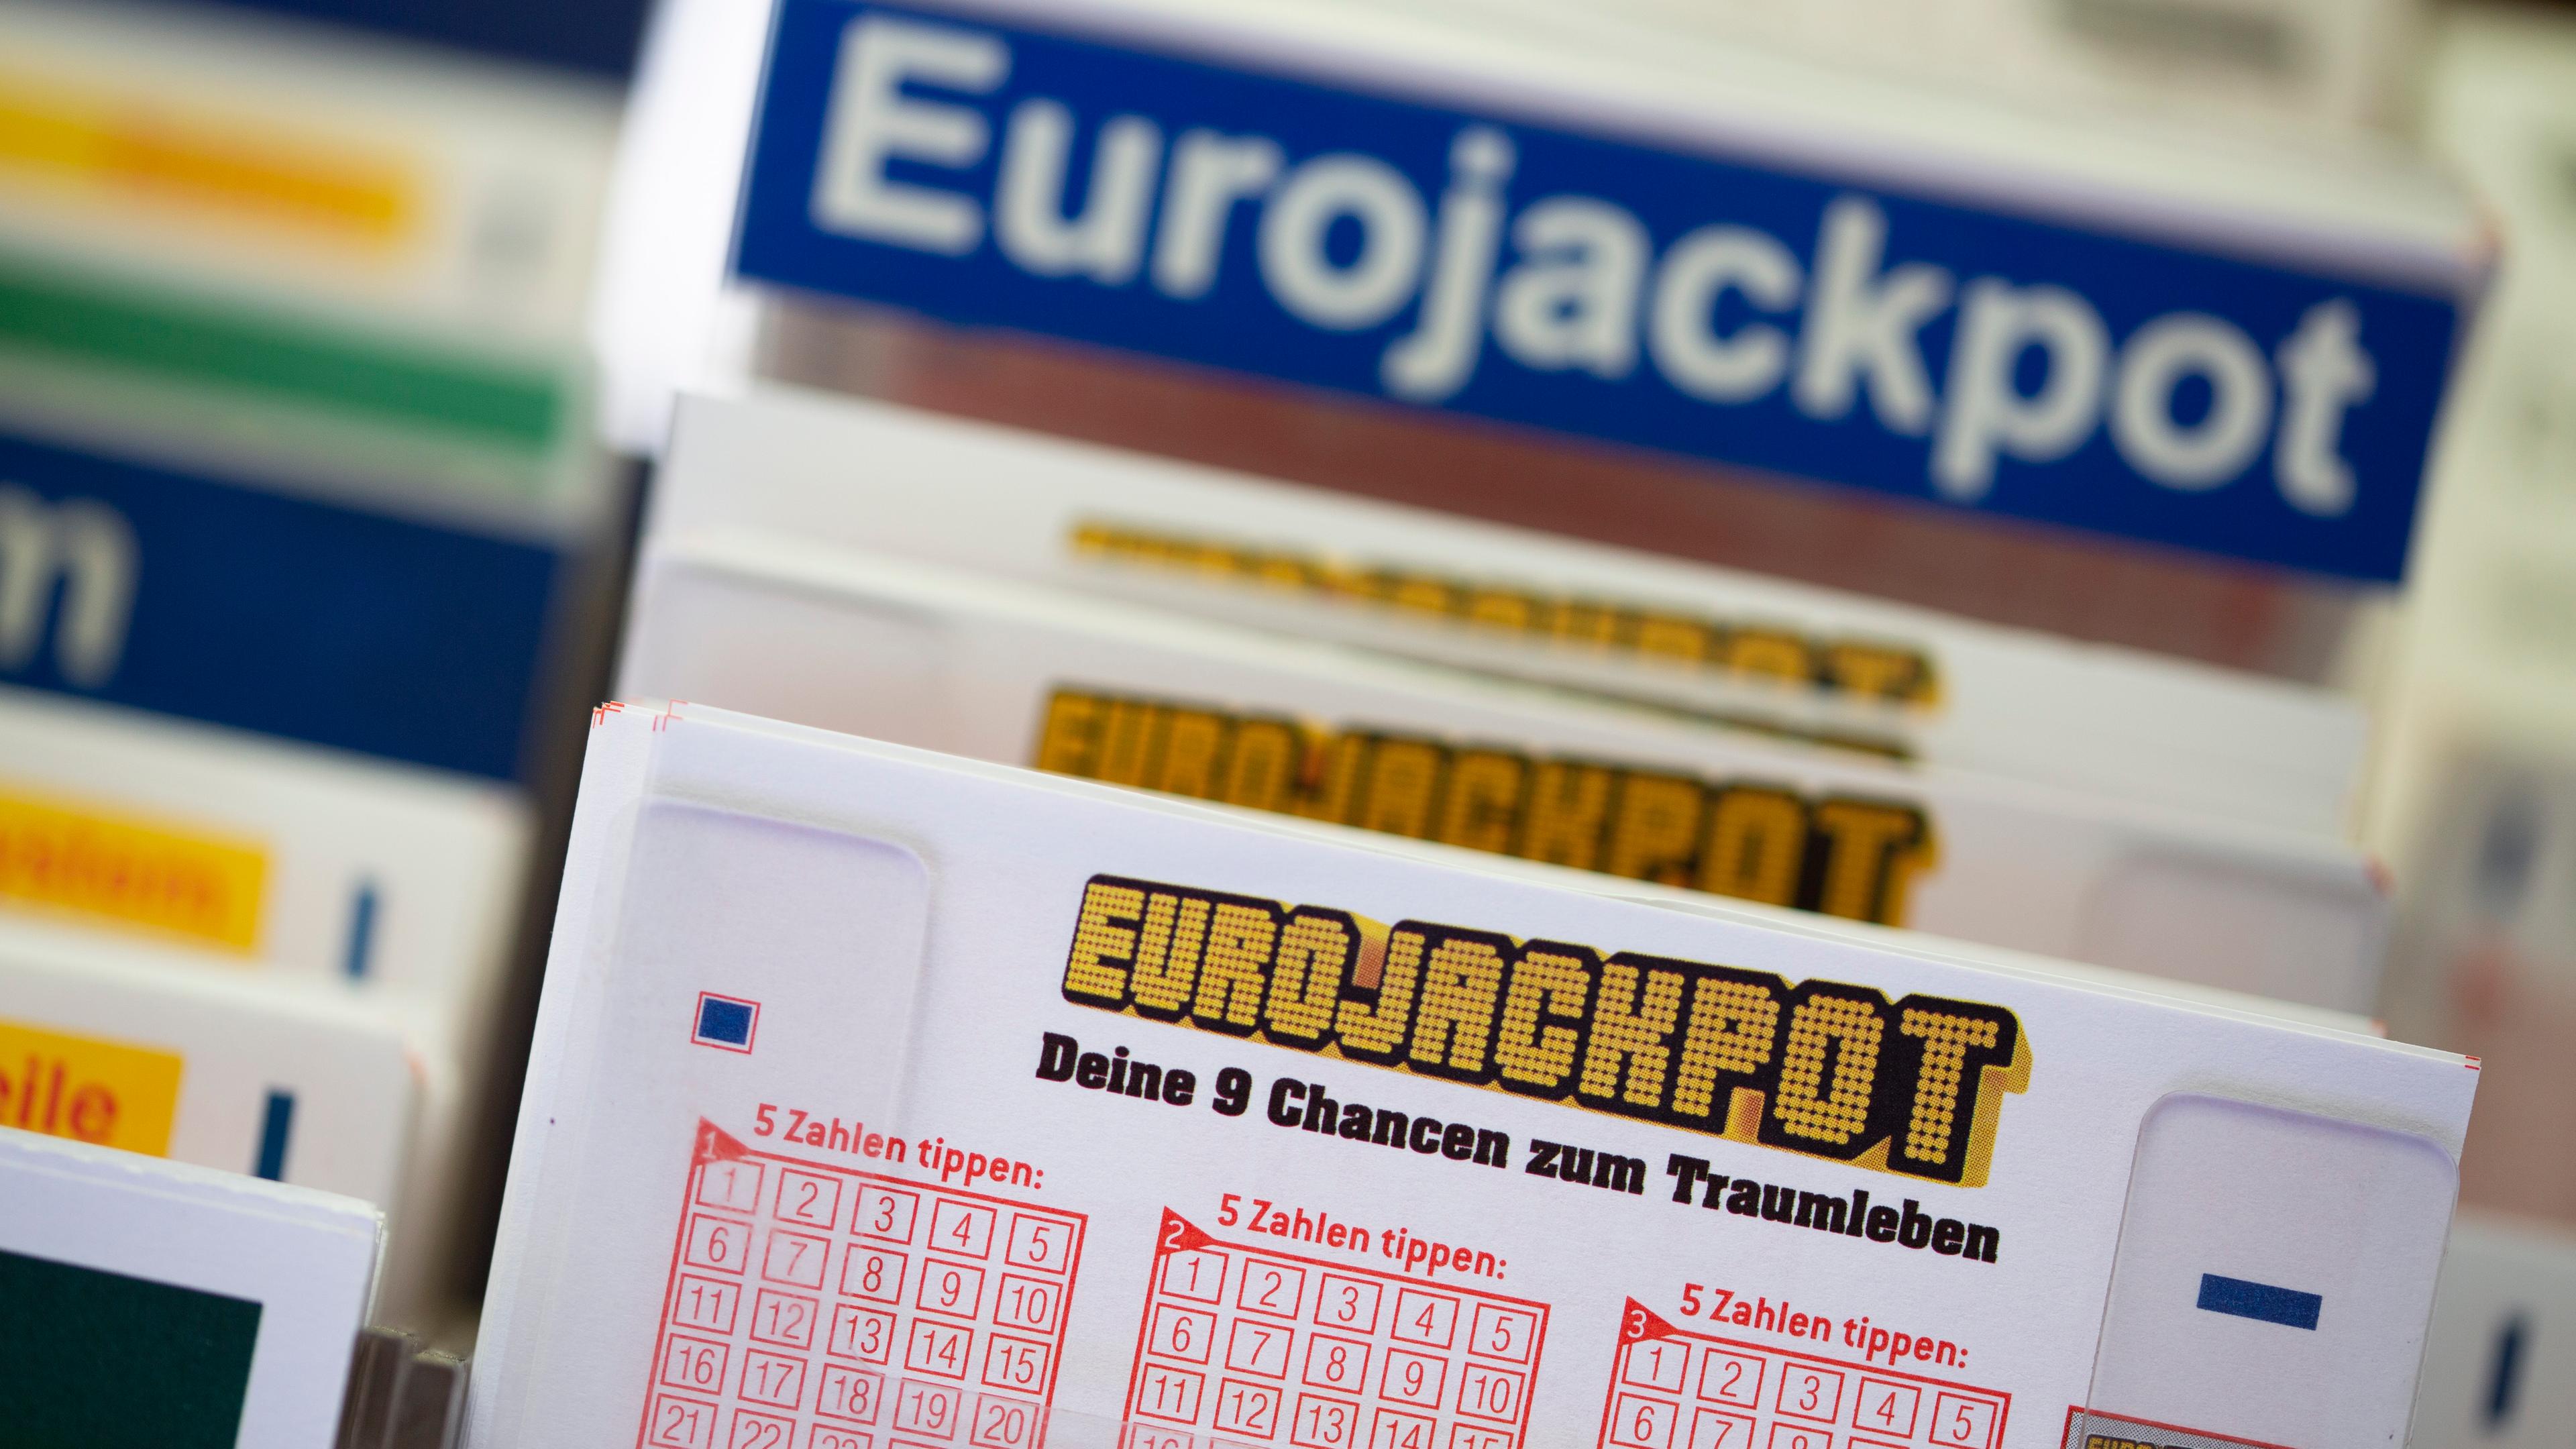 Lottoscheine mit der Aufschrift "Euro Jackpot" liegen in einer Lotto-Annahmestelle in NRW (Archivbild).